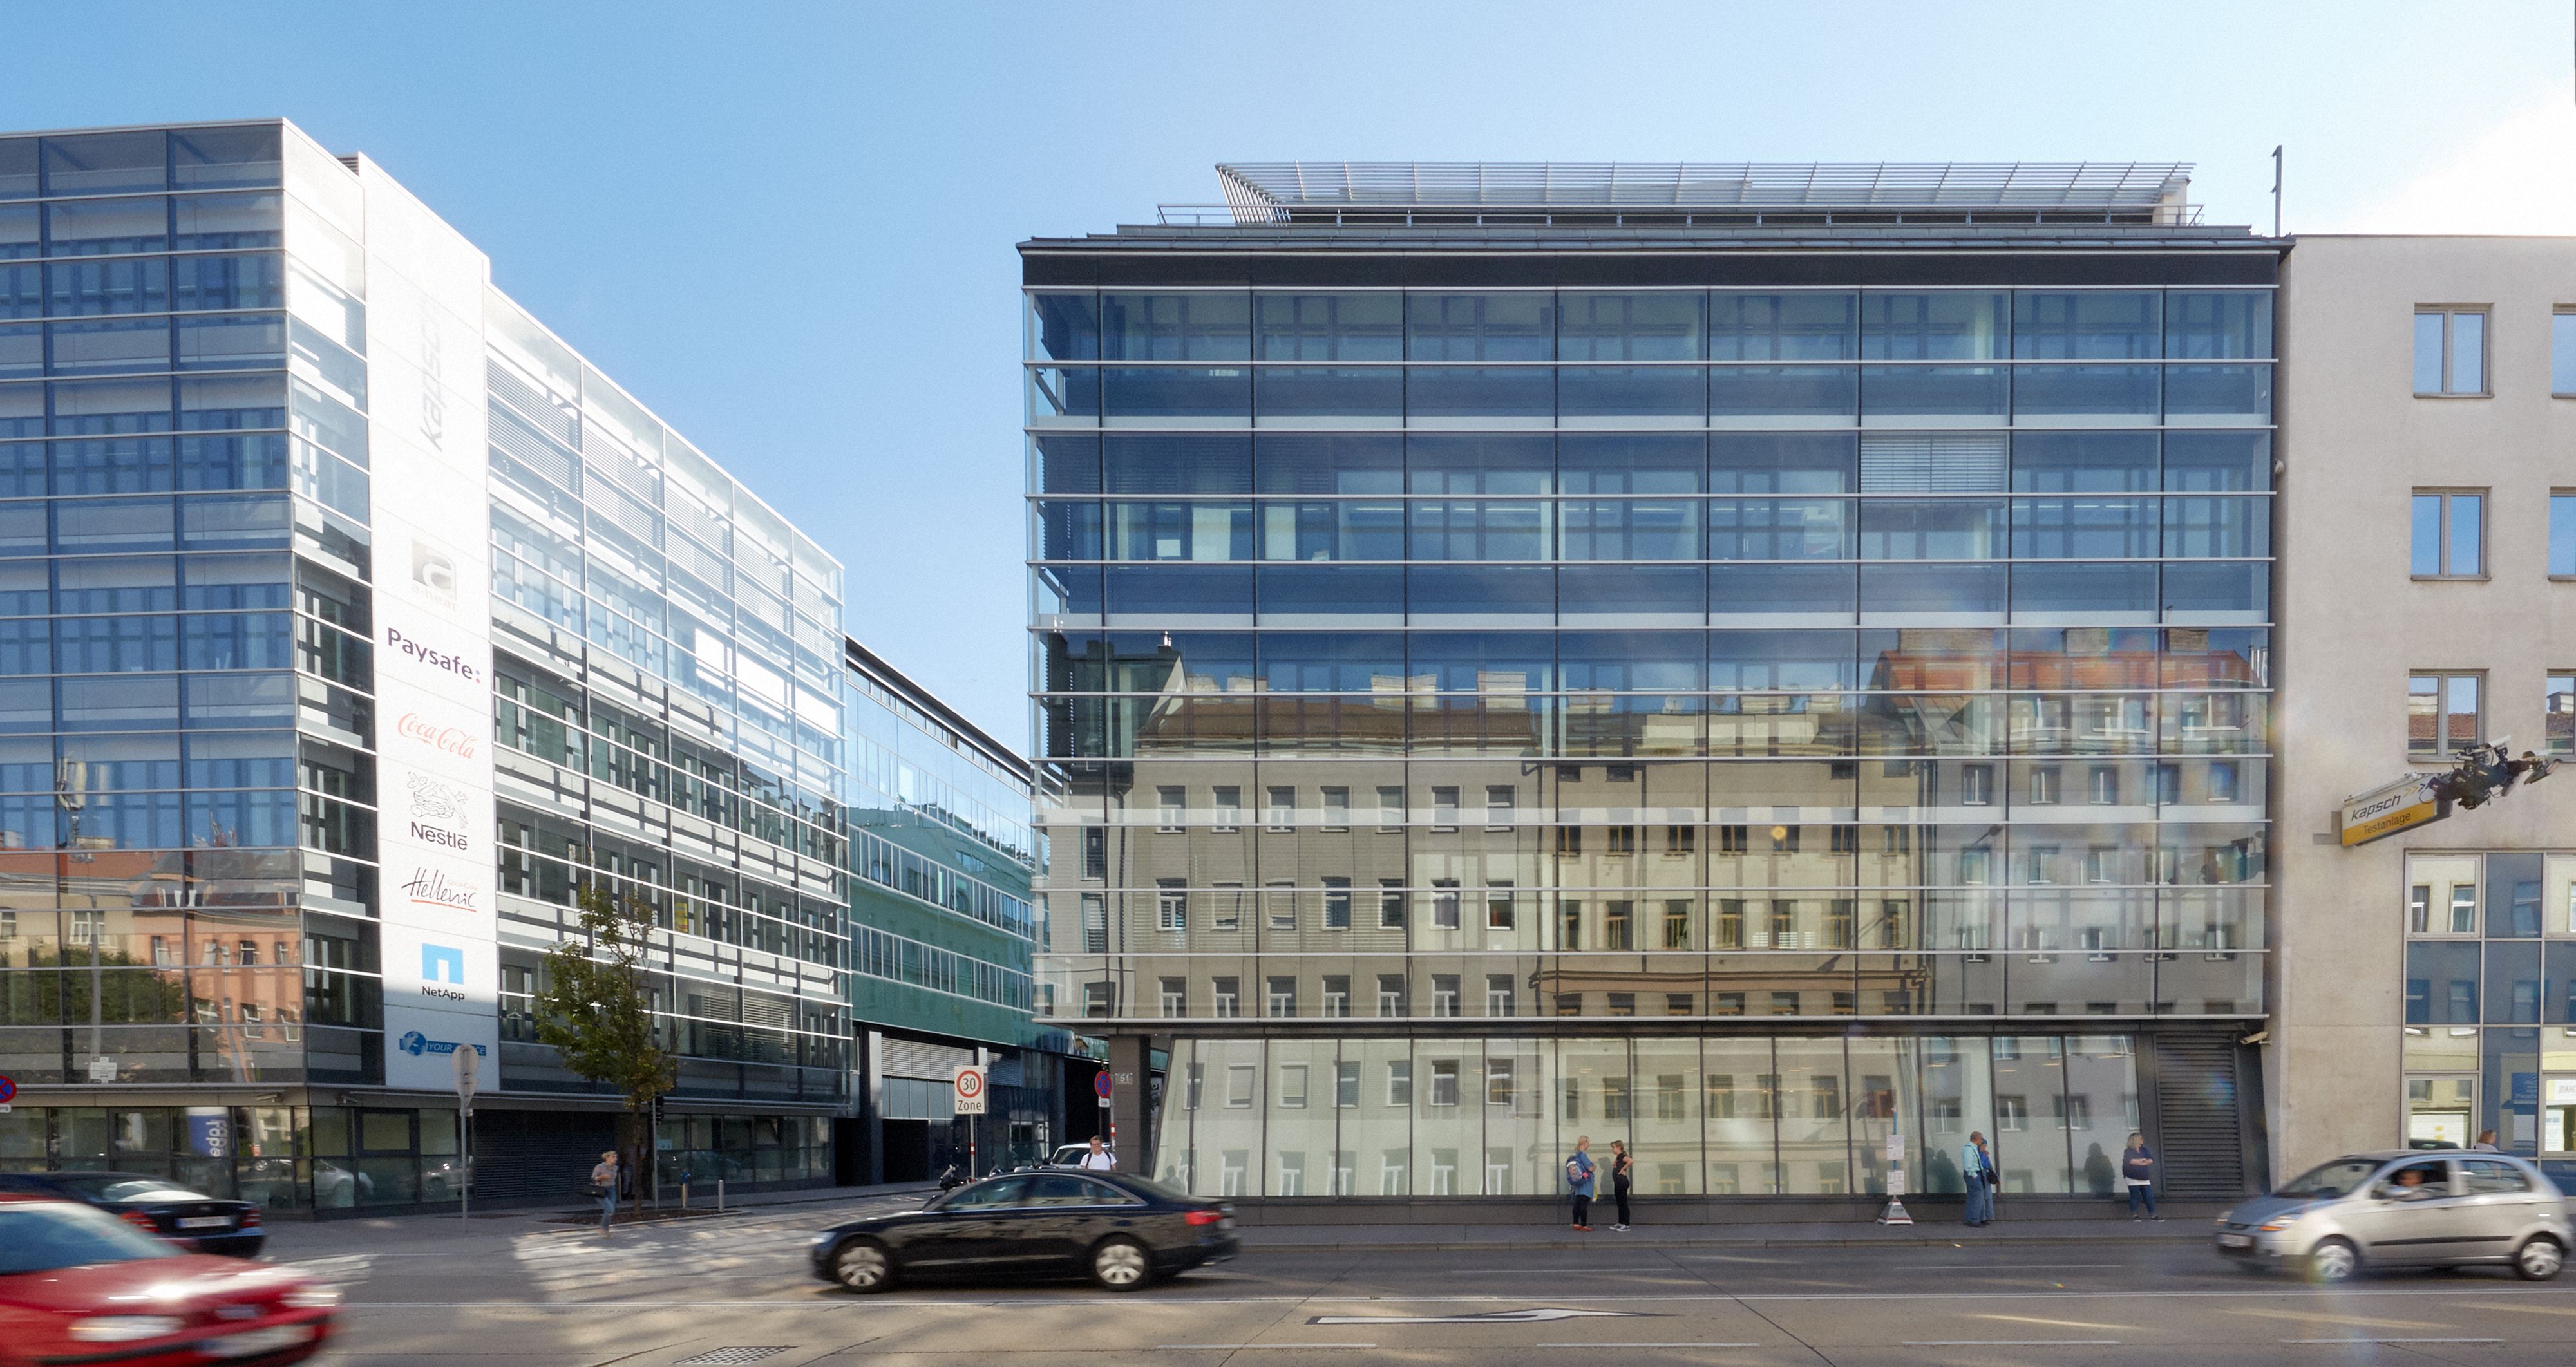 Foto: modernes Bürogebäude mit Glasfassade vor einer stark befahrenen mehrspurigen Straße; in der Glasfassade spiegeln sich bunte Gründerzeithäuser